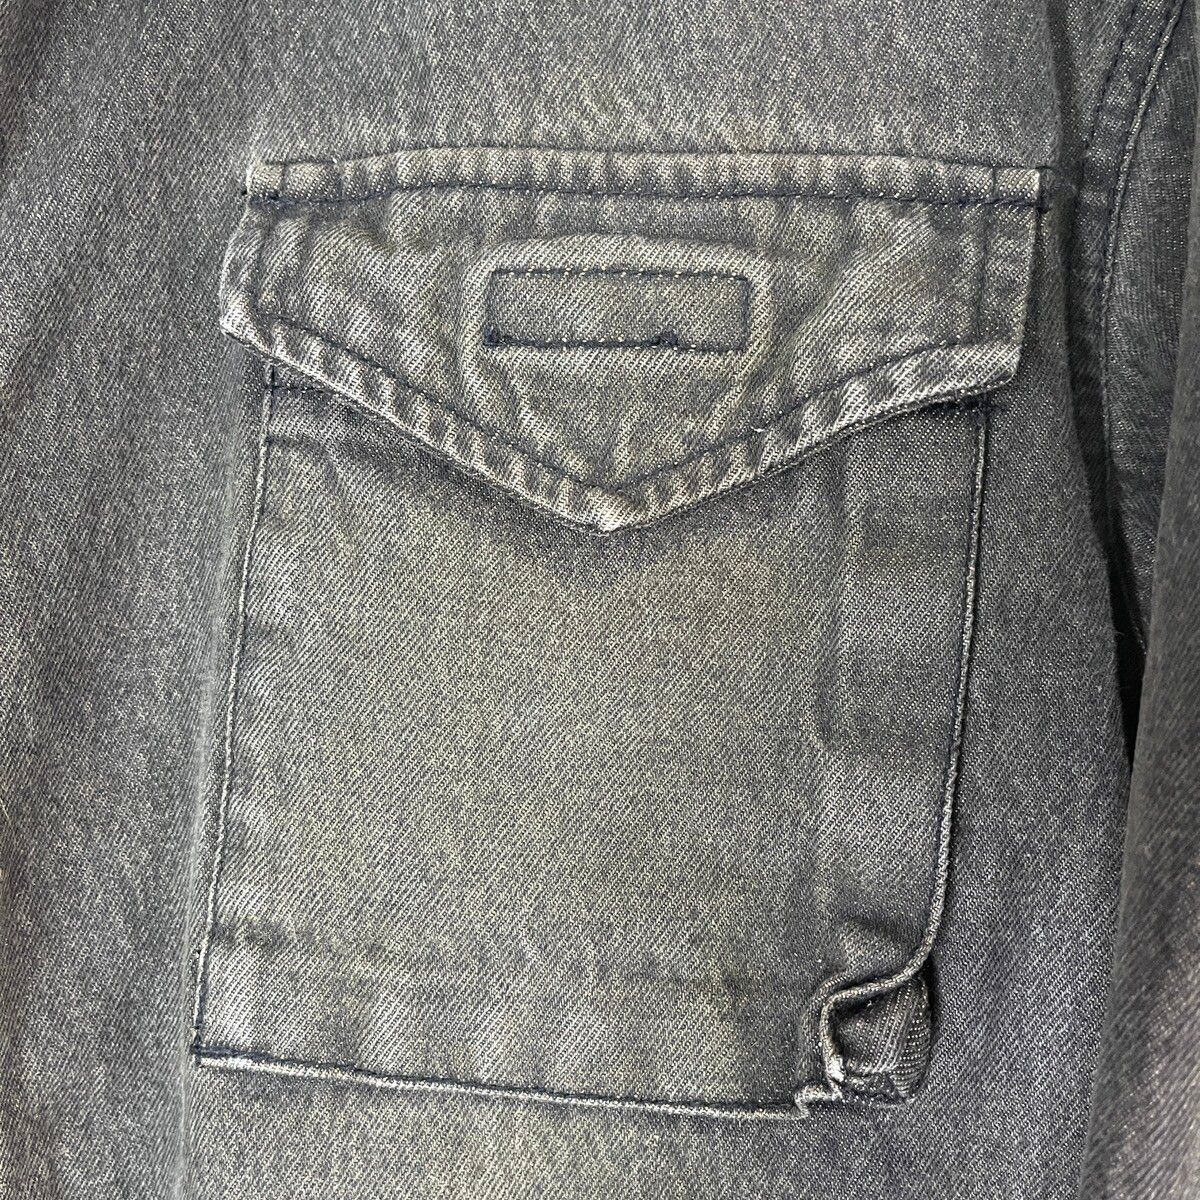 Denim Tactical Jacket PPFM 4 Pockets Vintage Made In Japan - 11